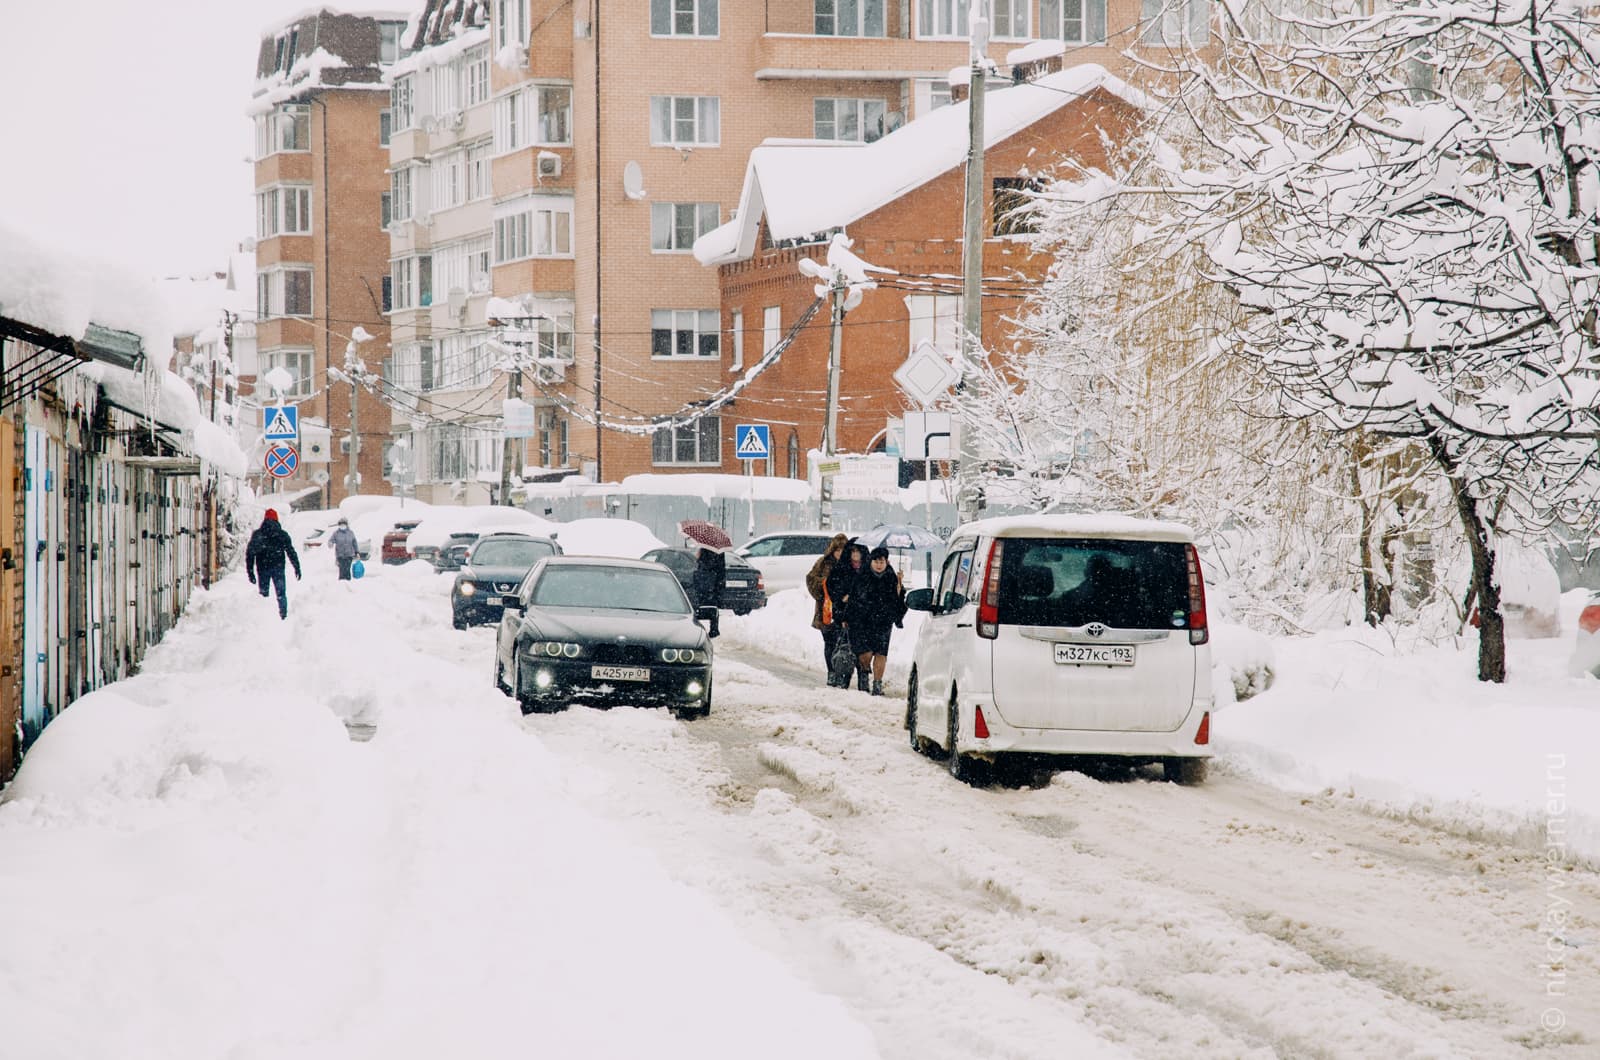 Узкая улица, занесённая снегом. Слева ряд гаражей, справа деревья, впереди кирпичные пятиэтажки. По снежным ухабам на проезжей части продираются автомобили